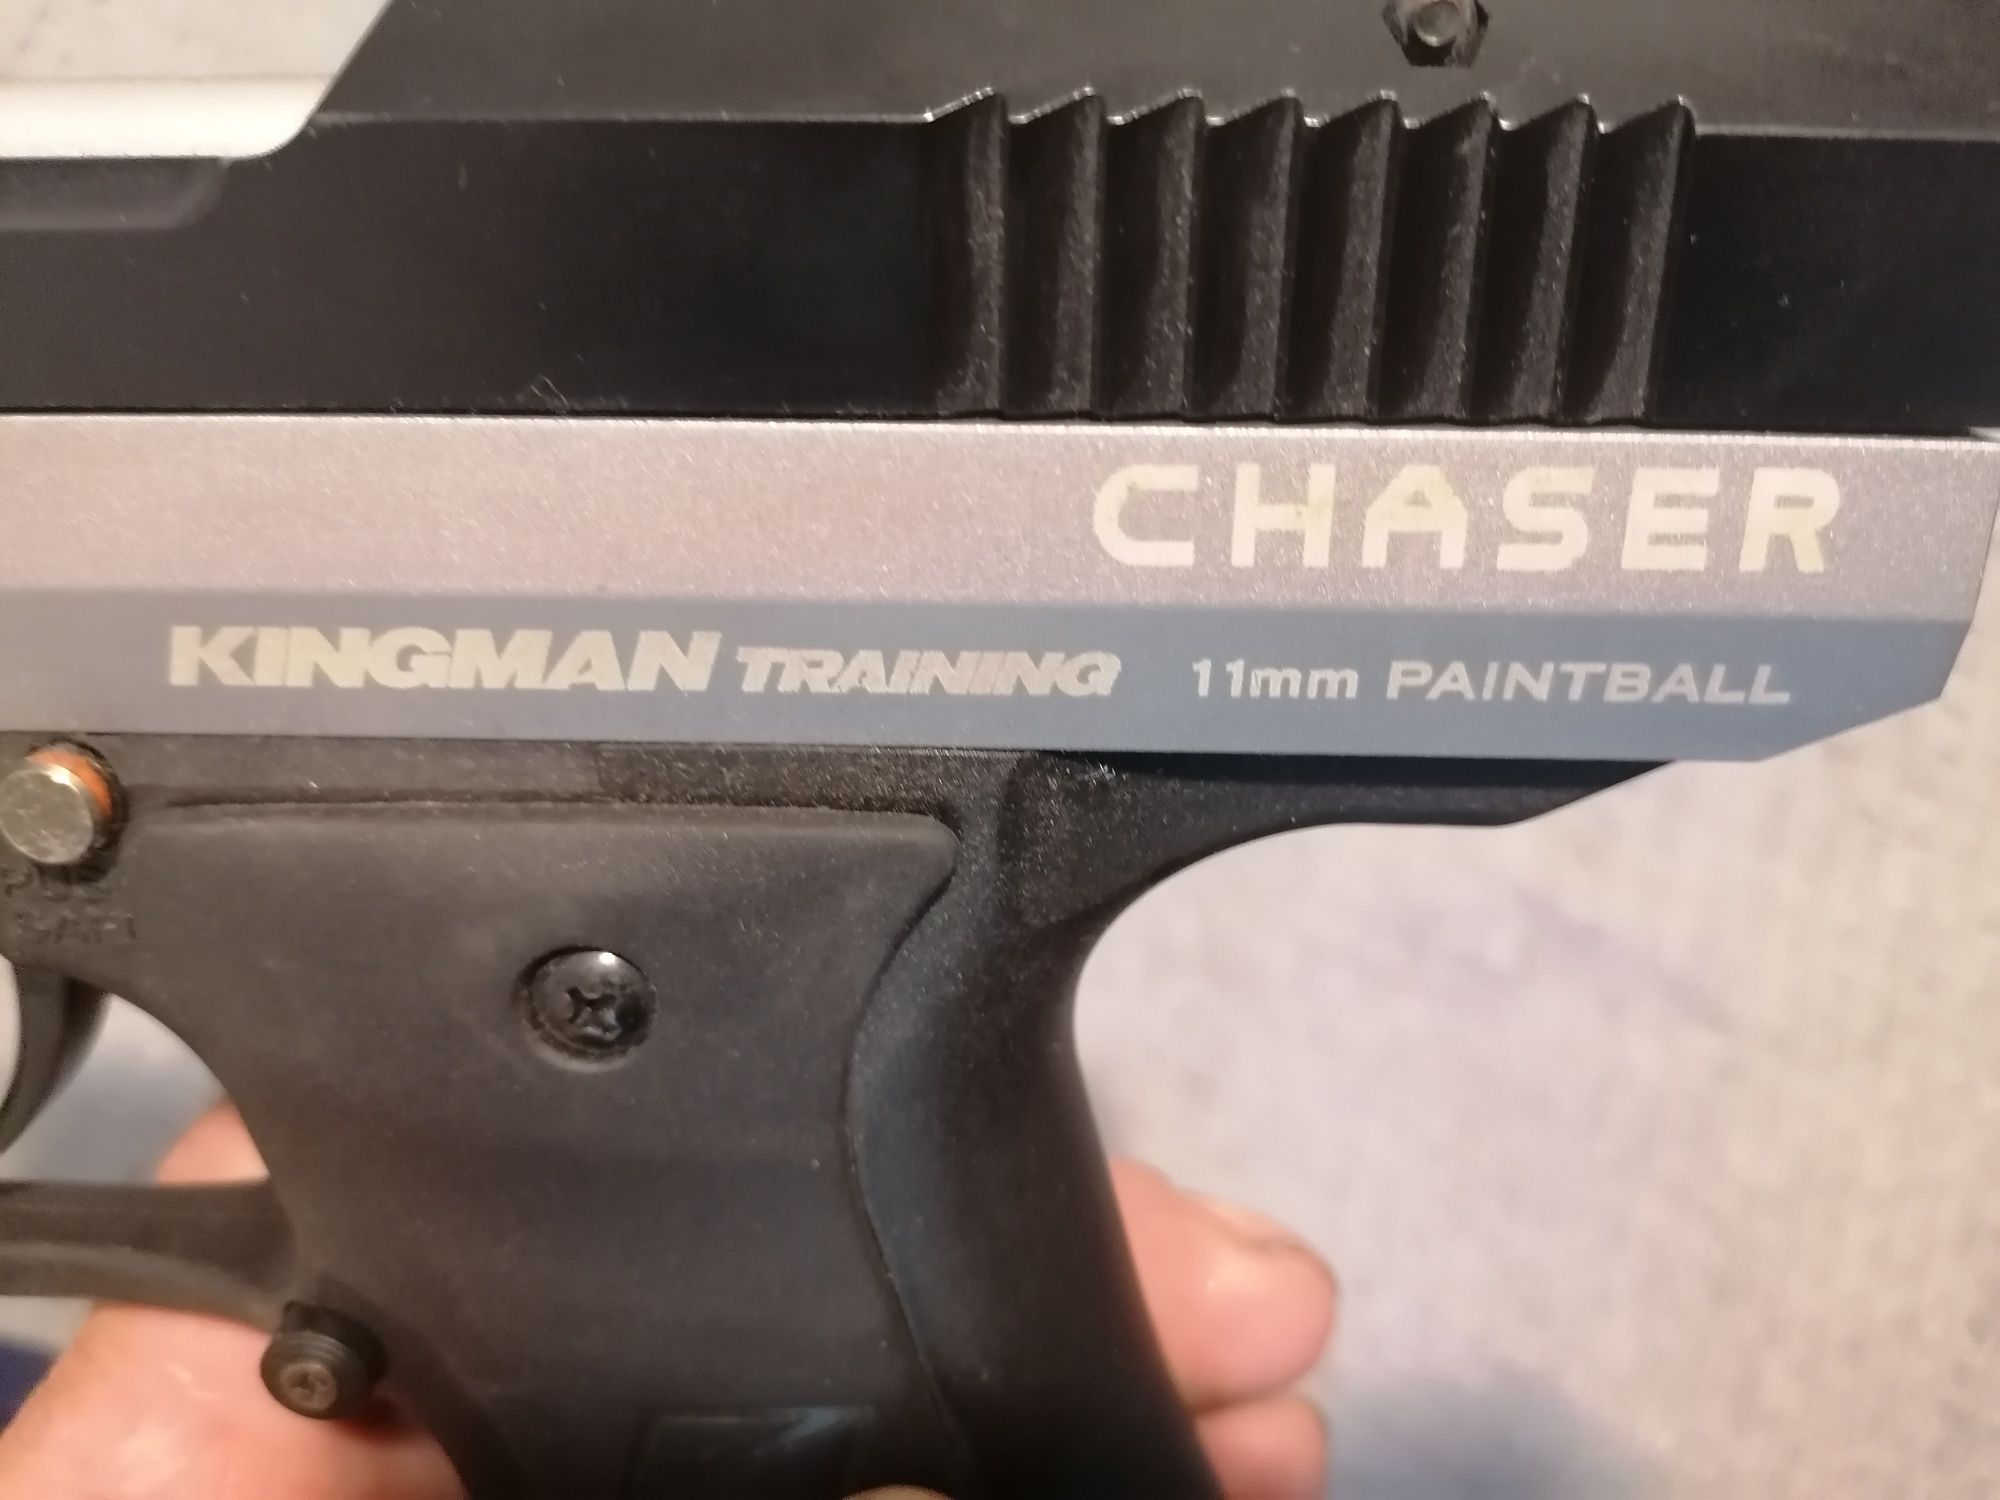 Pistol paintball Kingman Chasser 11mm